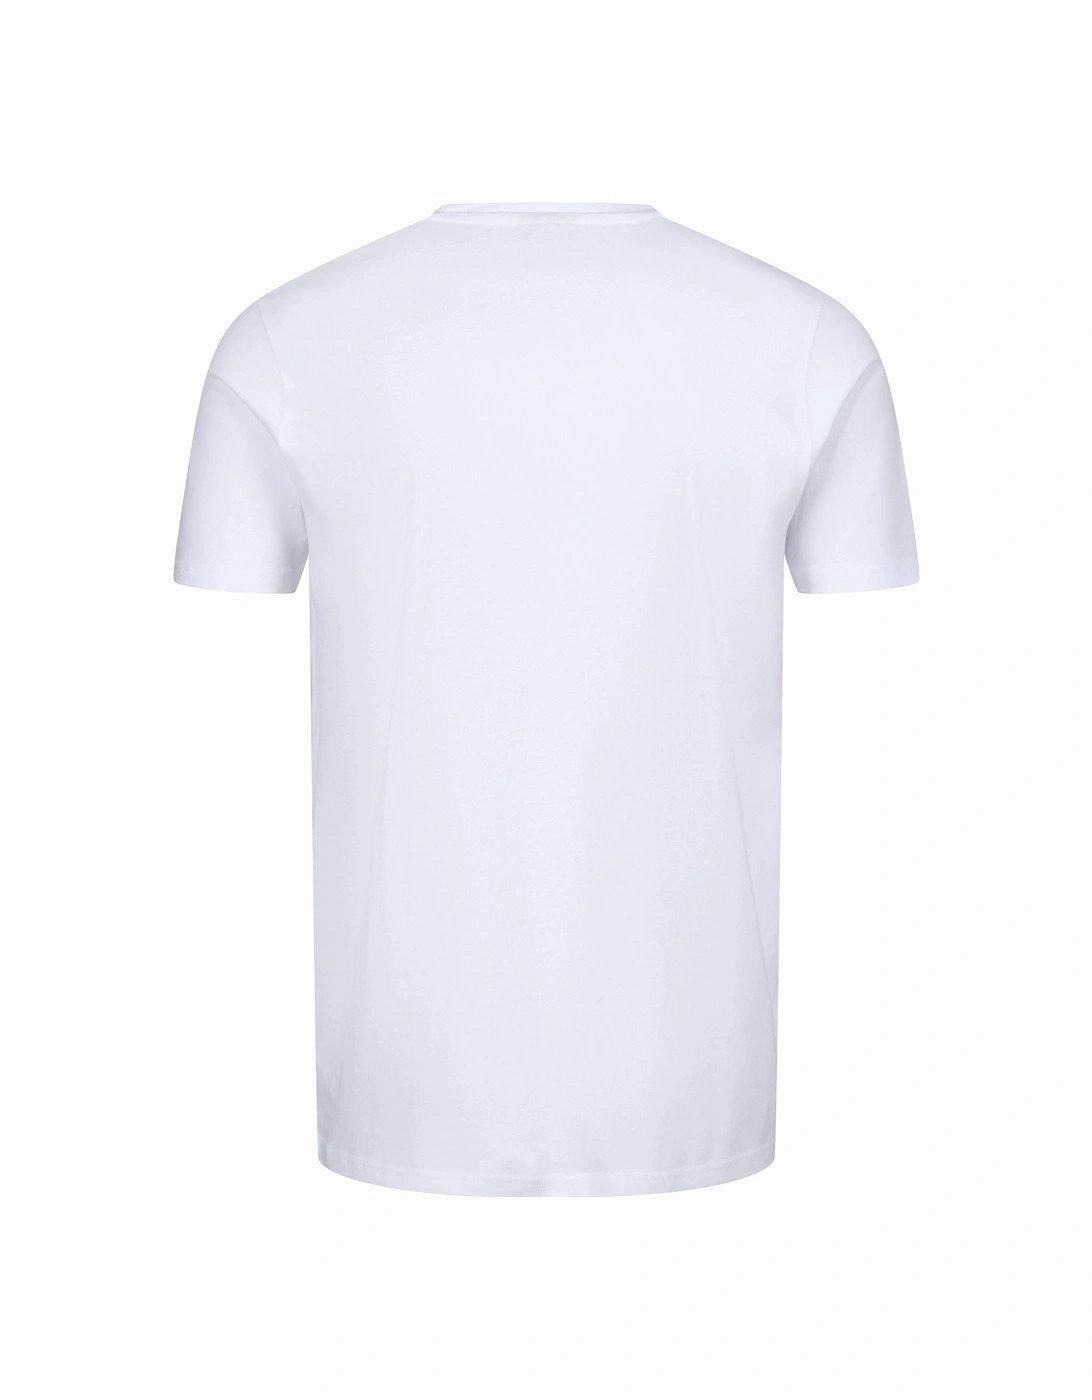 Prado SL Crew Neck T-Shirt | Optic White